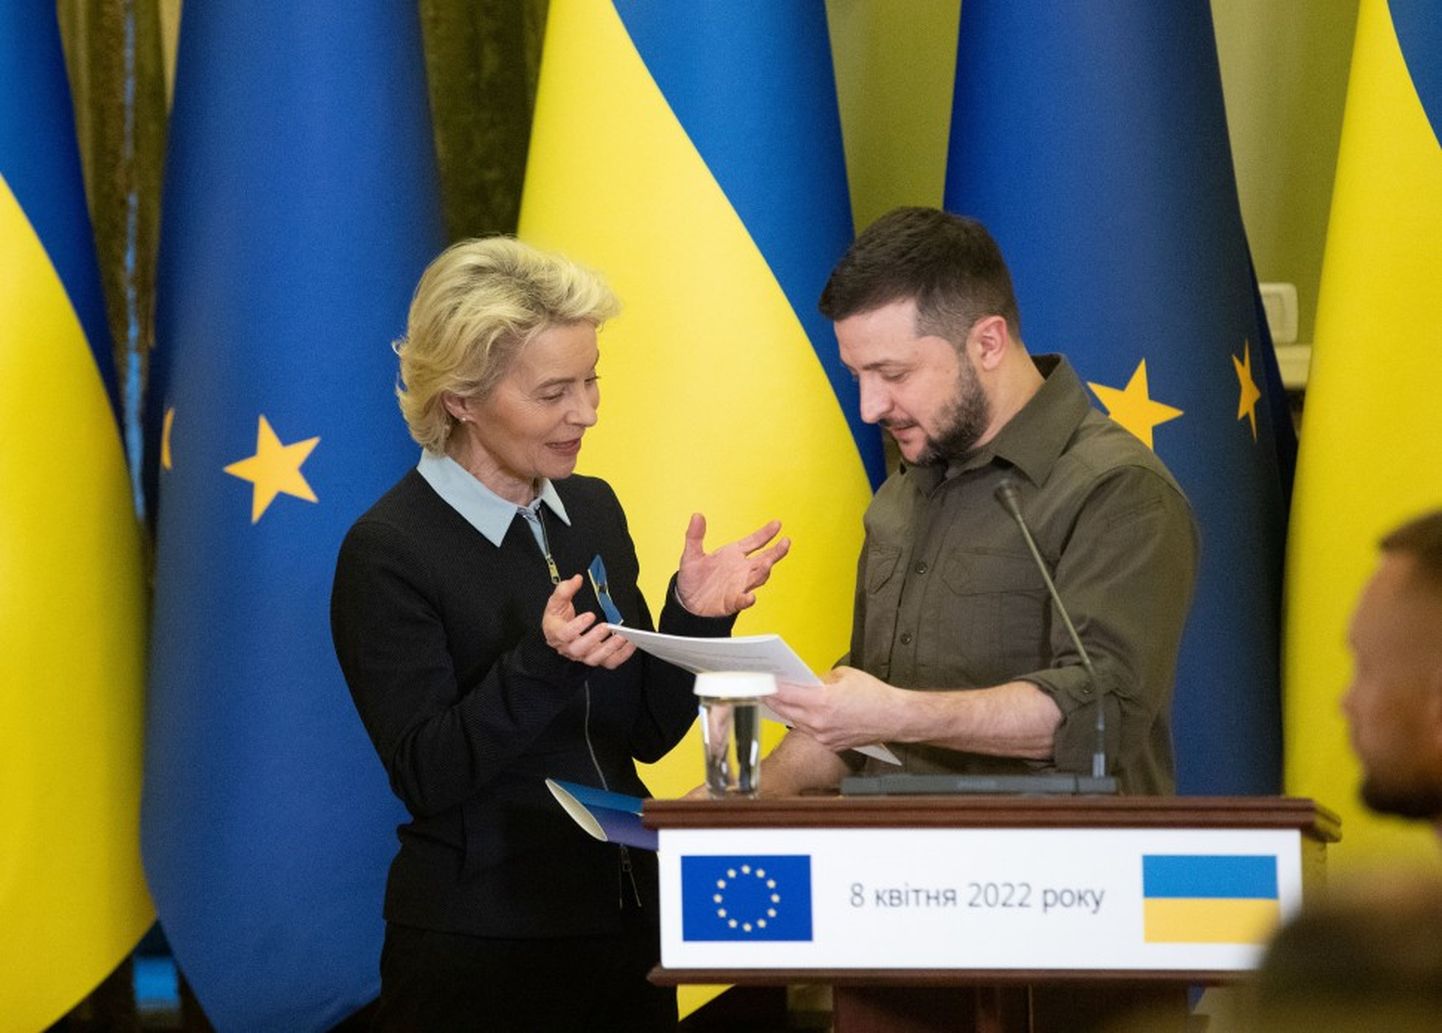 Глава европейской дипломатии Жозеп Боррель, президентом Европейской комиссии Урсула фон дер Ляйен на встрече с президентом Украины Владимиром Зеленским, 8 апреля 2022 года, Киев.